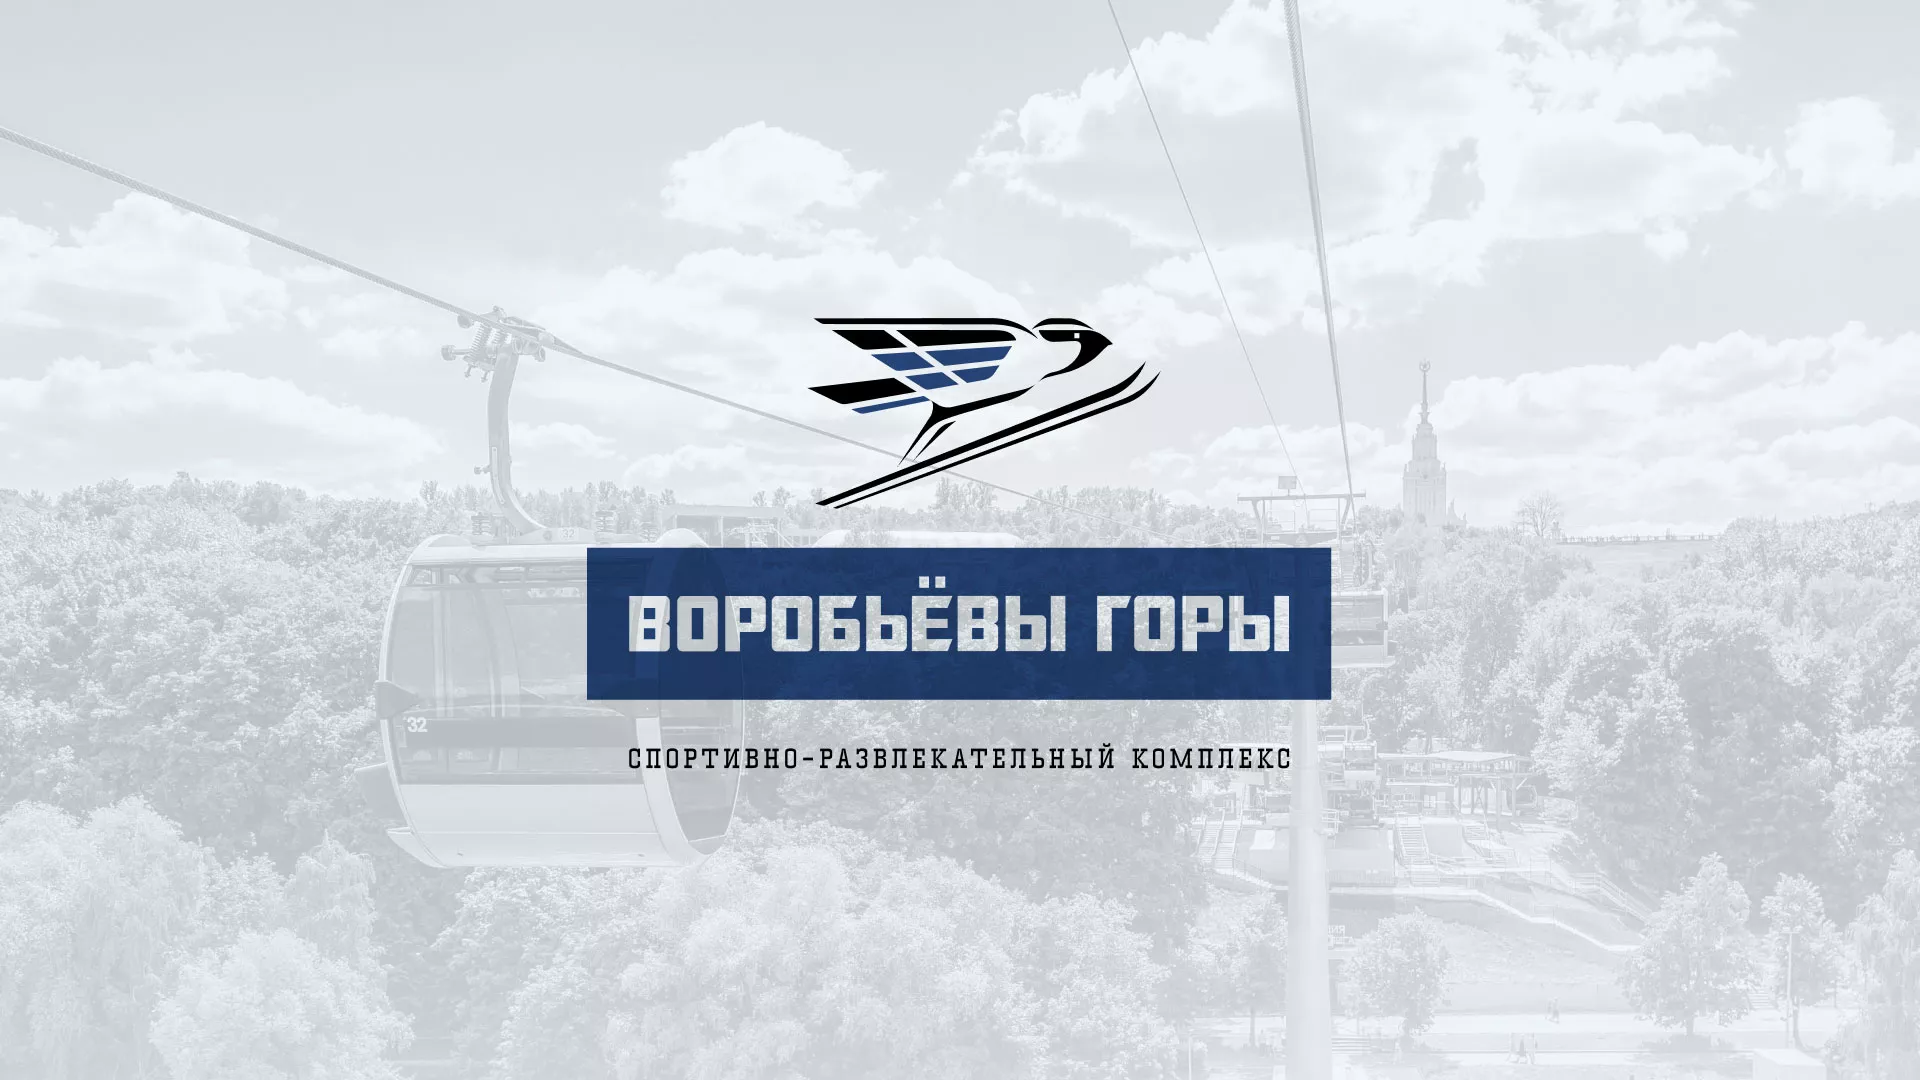 Разработка сайта в Камешково для спортивно-развлекательного комплекса «Воробьёвы горы»